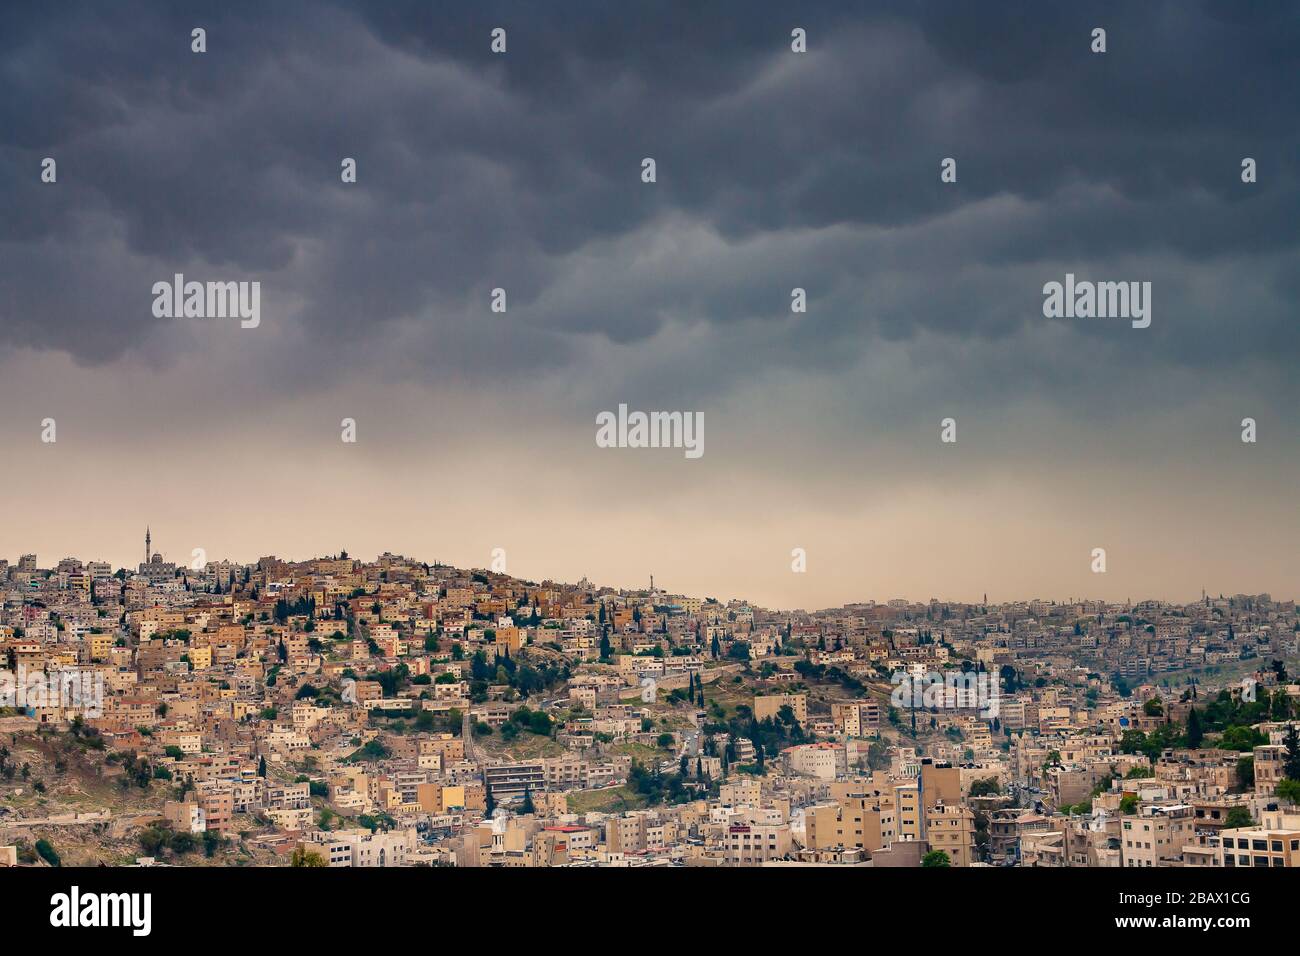 Bedrohliche Sturmwolken, die sich über dicht besiedelten Hügeln der Altstadt von Amman, Jordanien, abzeichnen. Stockfoto